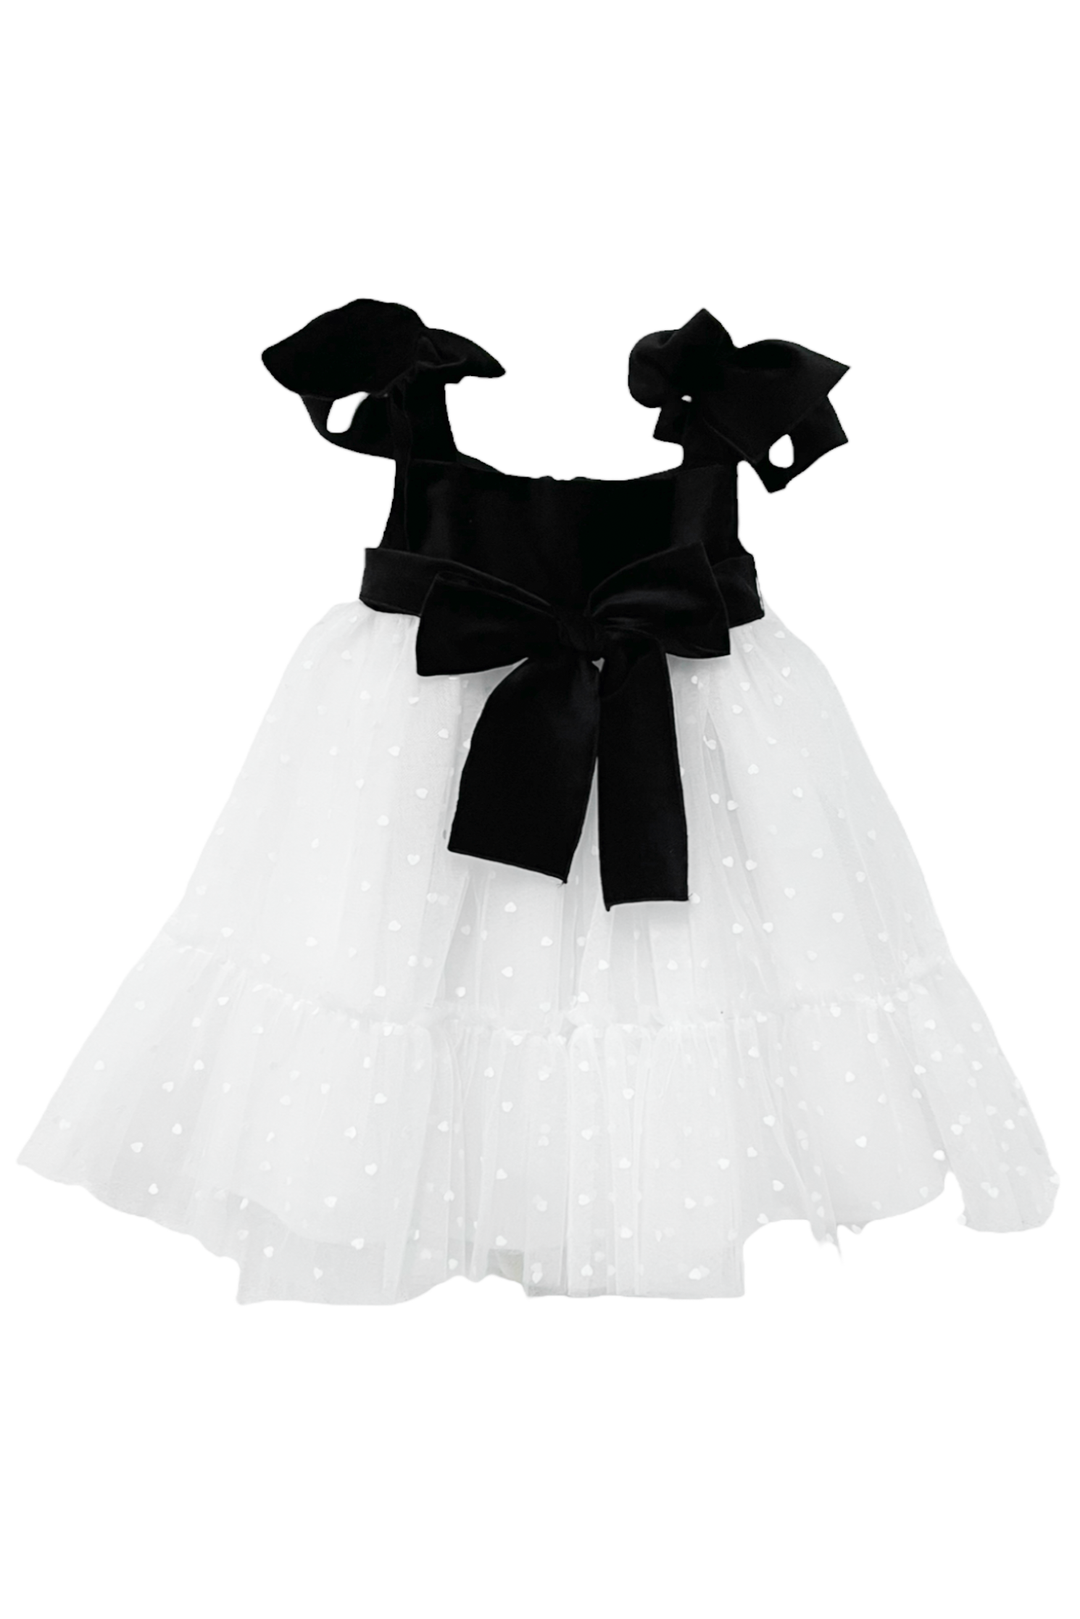 Phi "Theodora" Black & White Velvet Tulle Dress | Millie and John